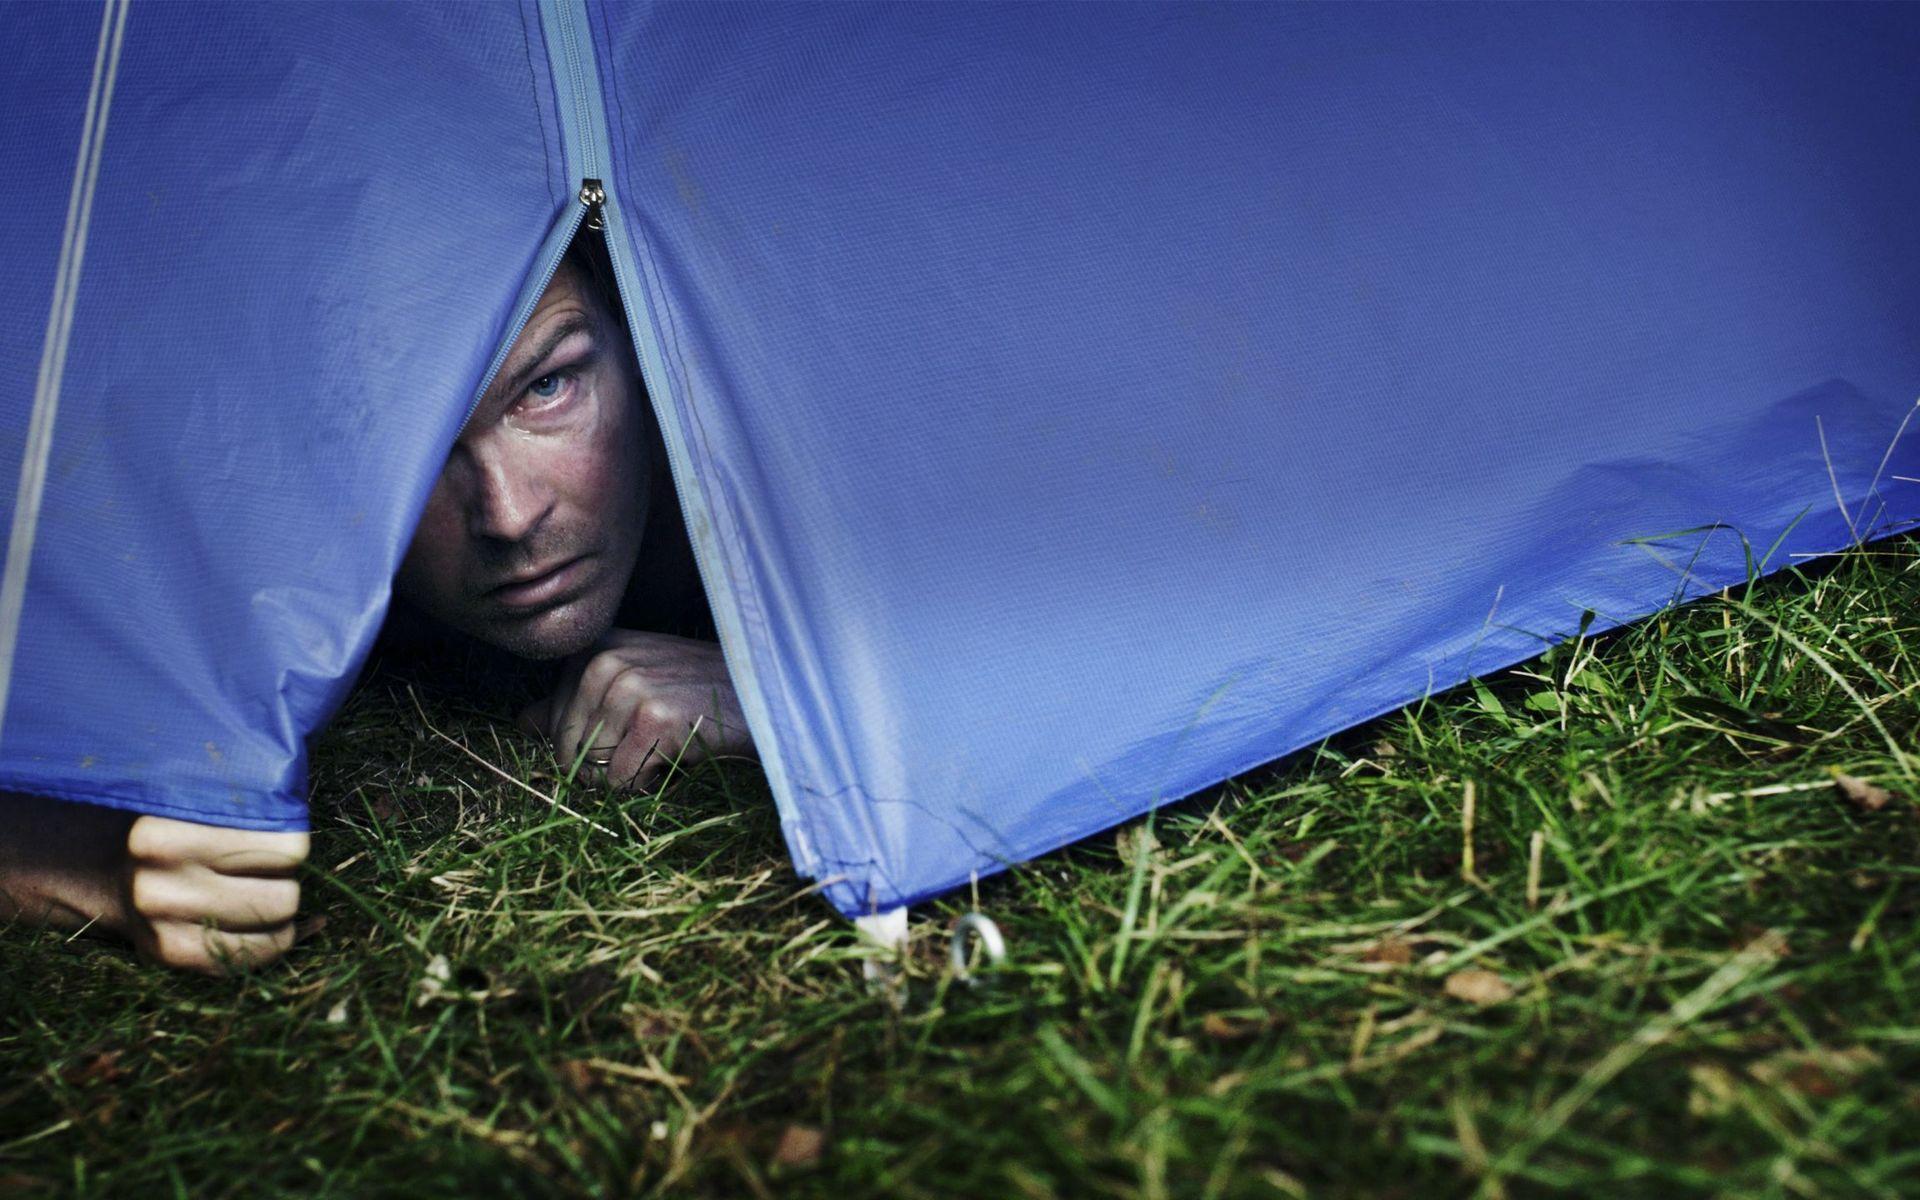 I Koki-di. Koko-da, Johannes Nyholms nya film, möter slapstick buskis och skräck medan ett krisande par åker på campingsemester.